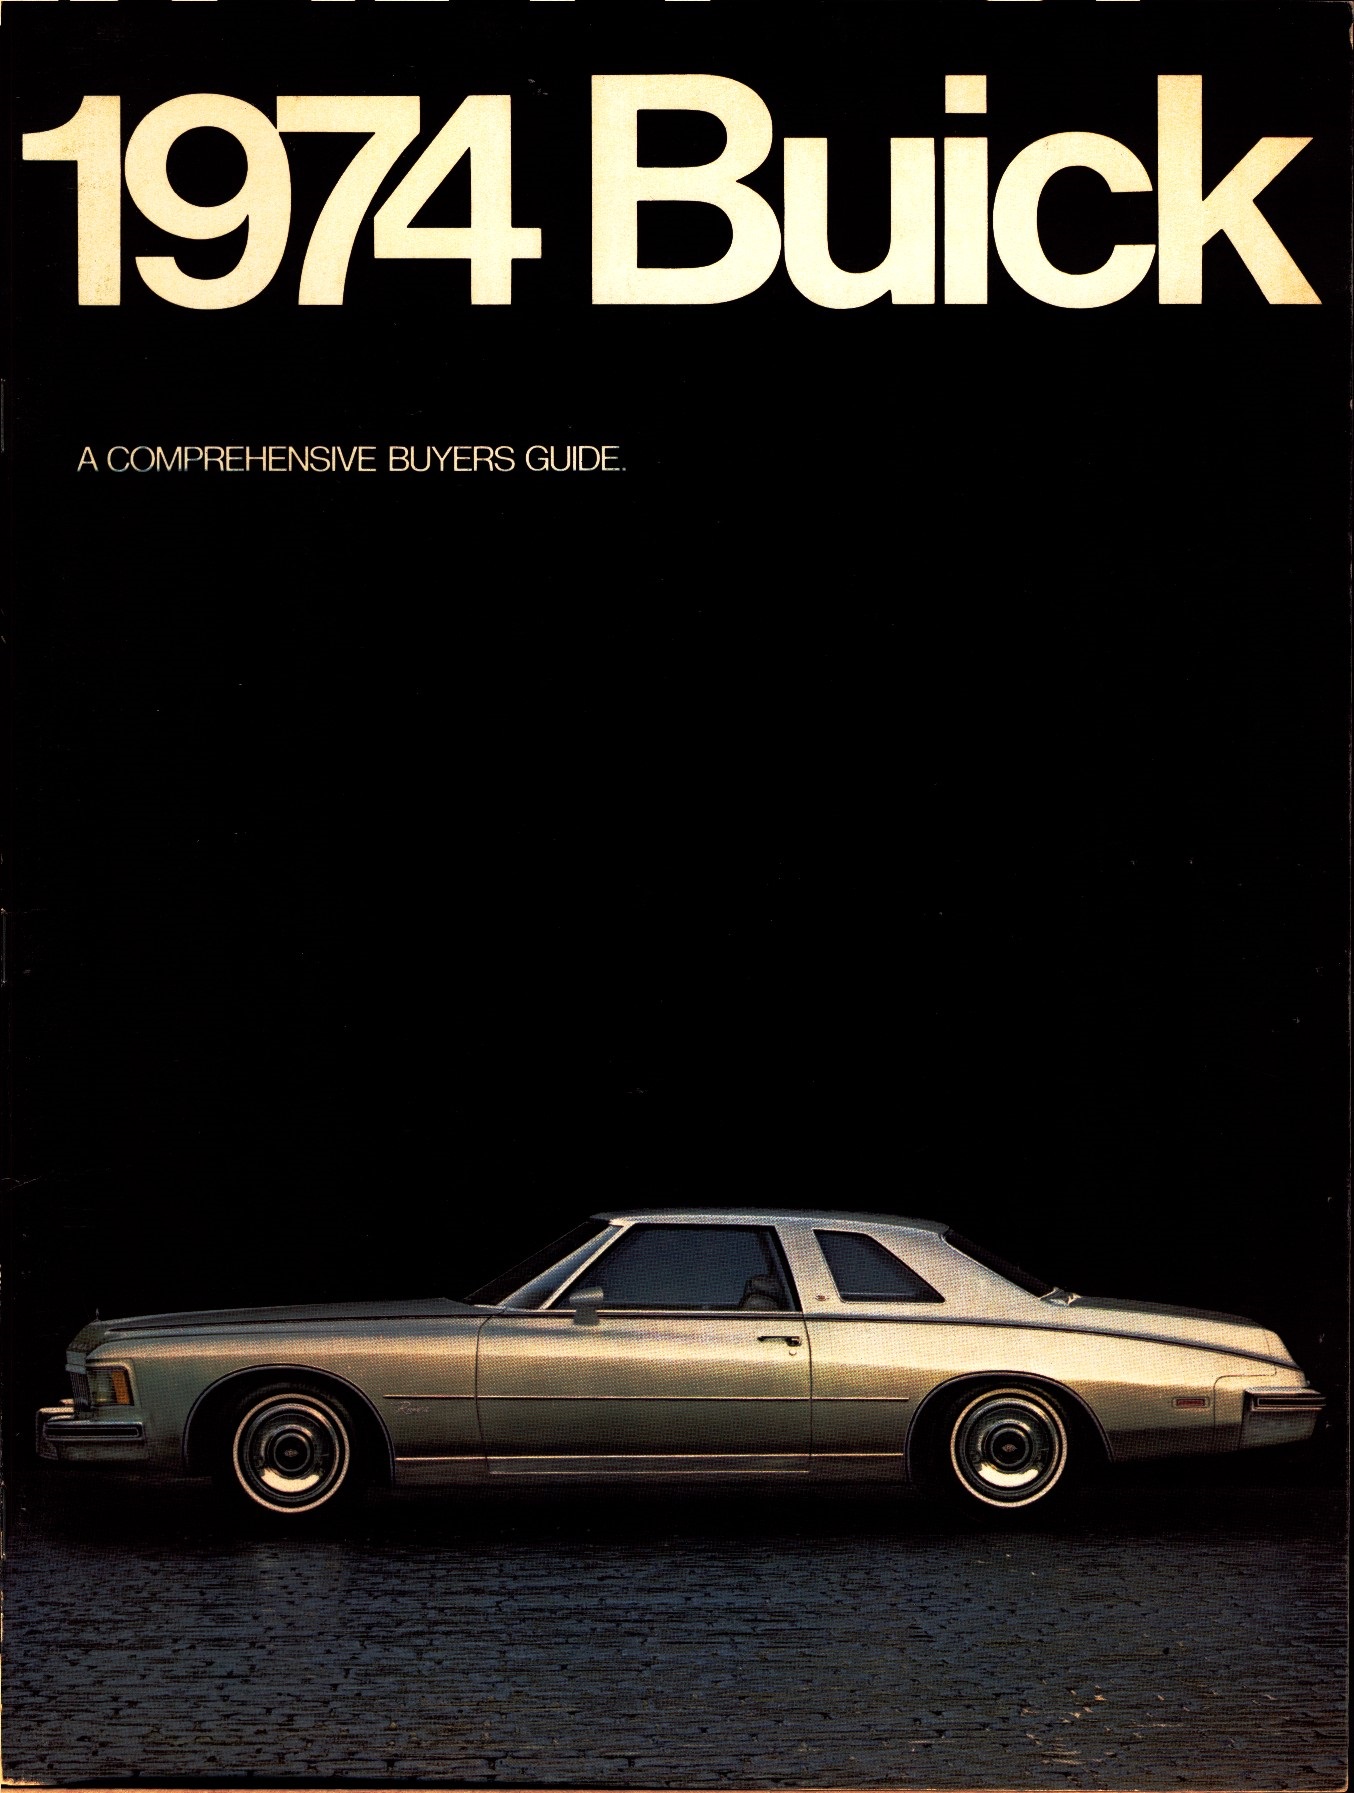 1974 Buick 00